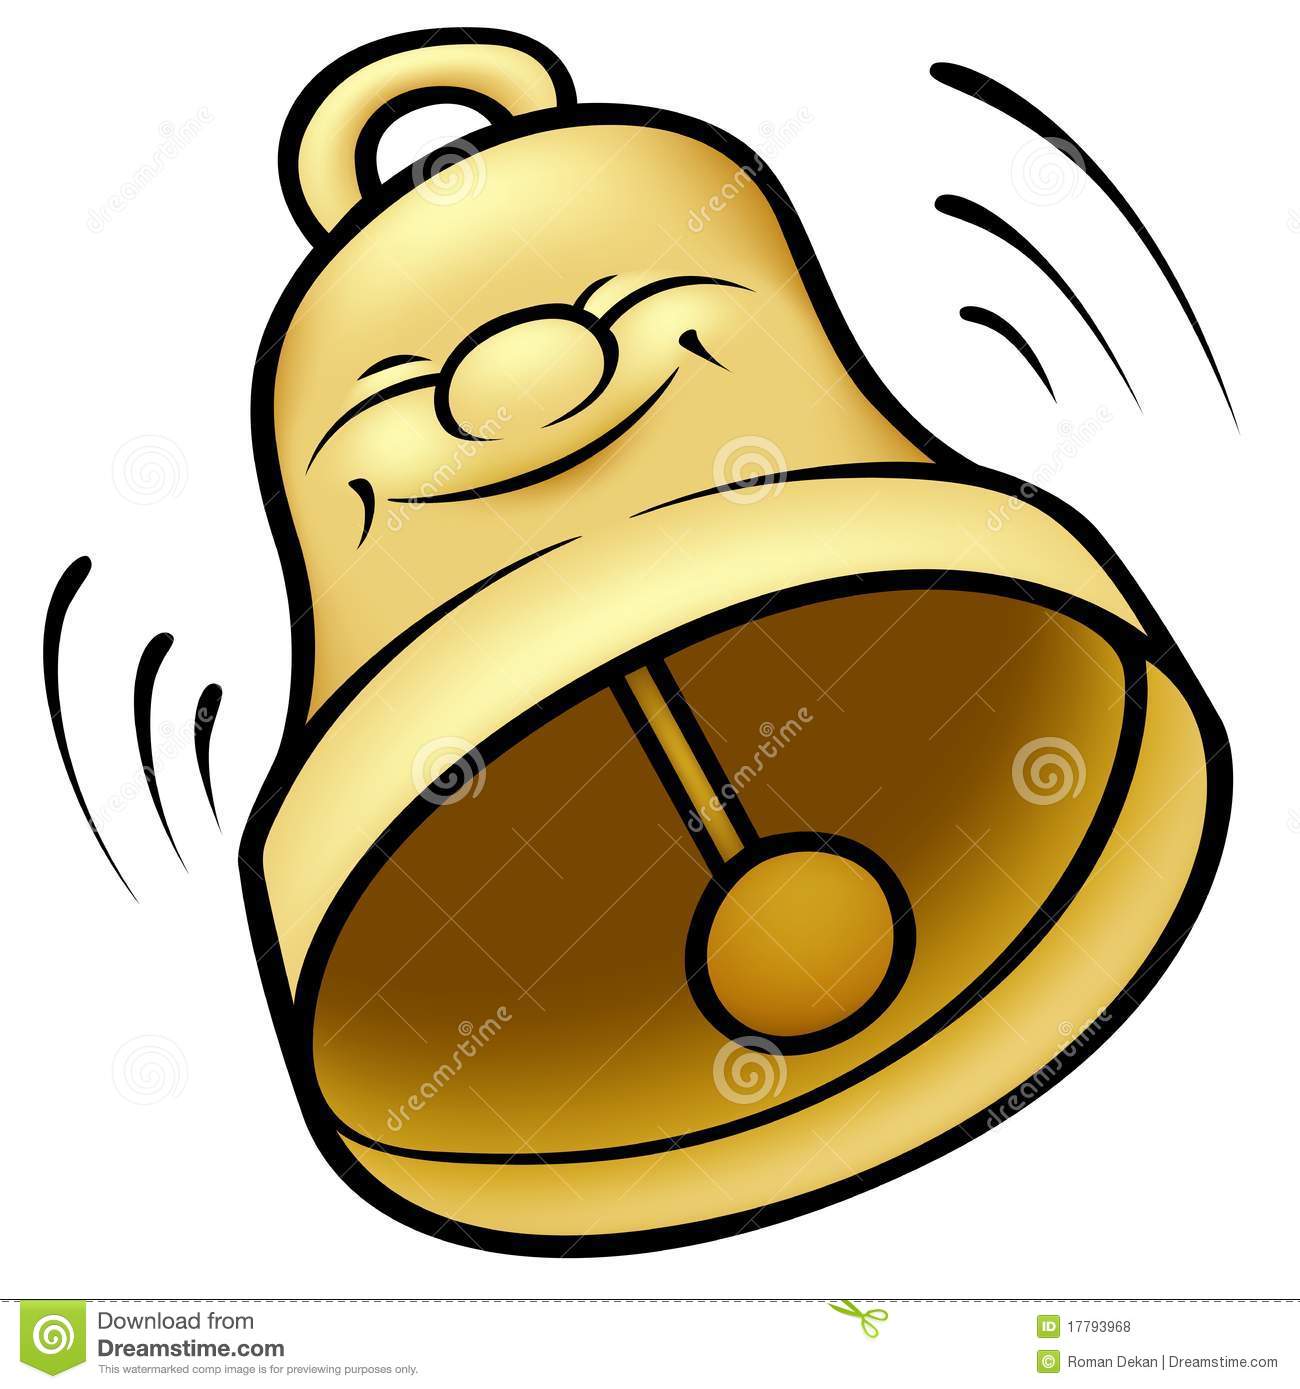 handbell: Golden hand bell Il